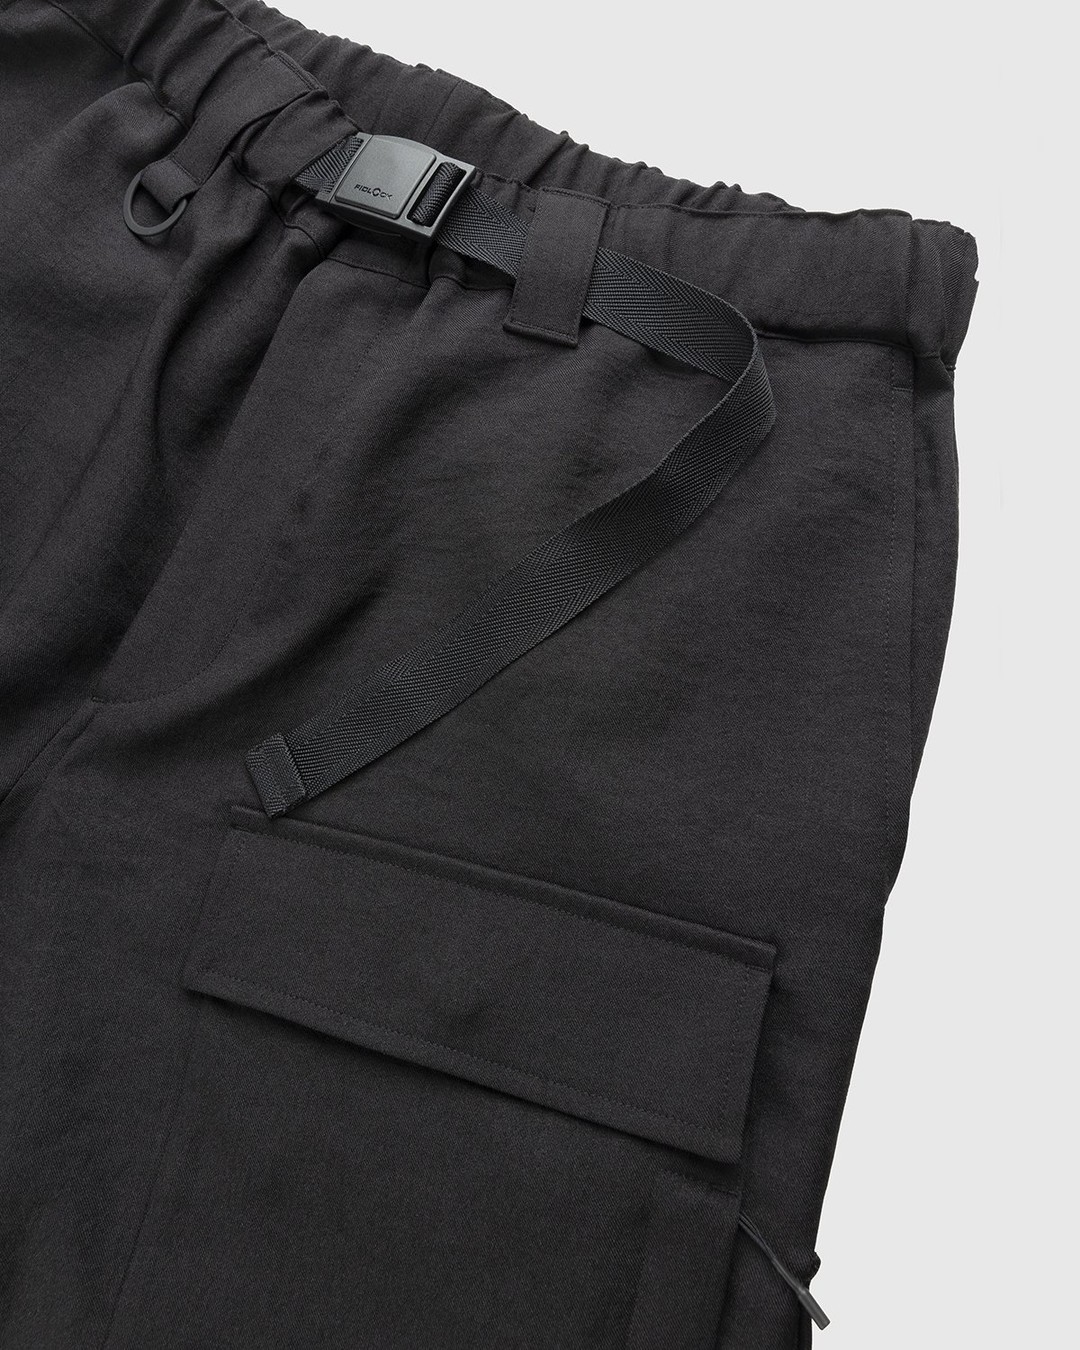 Y-3 – Classic Sport Uniform Cargo Pants Black - Cargo Pants - Black - Image 3